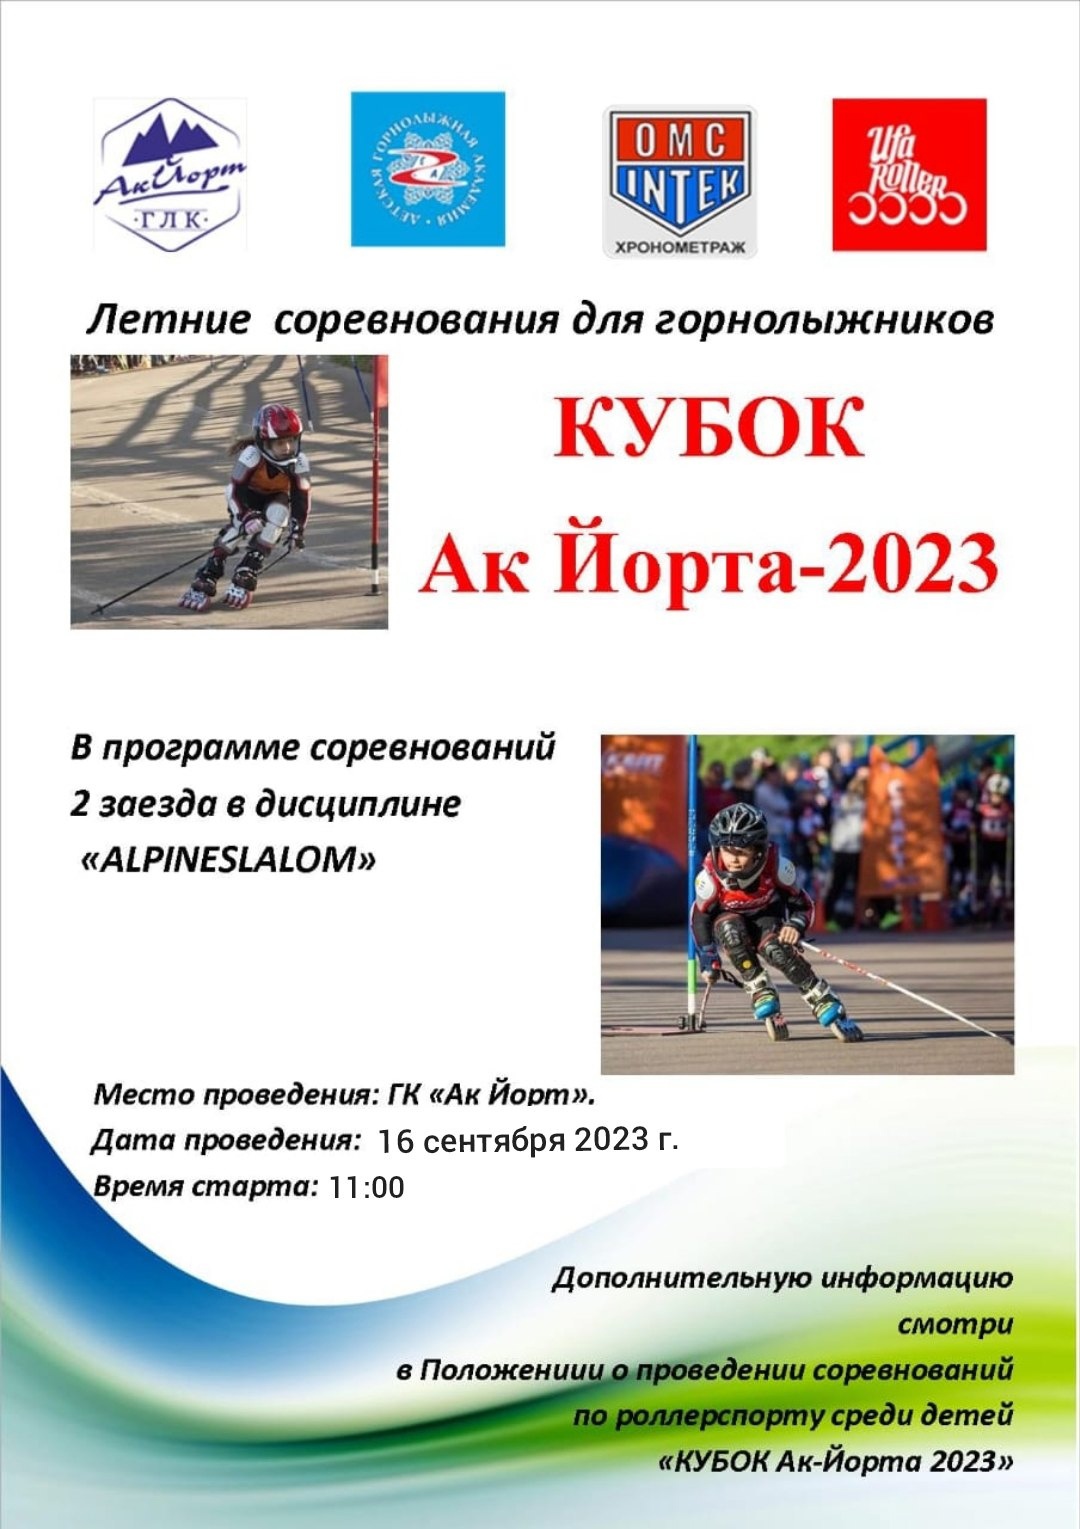 16 сентября 2023 года в 11:00, а ГЛК «АК ЙОРТ» состоятся соревнования по дисциплине Алпай-слалом, «Кубок Ак Йорта-2023»